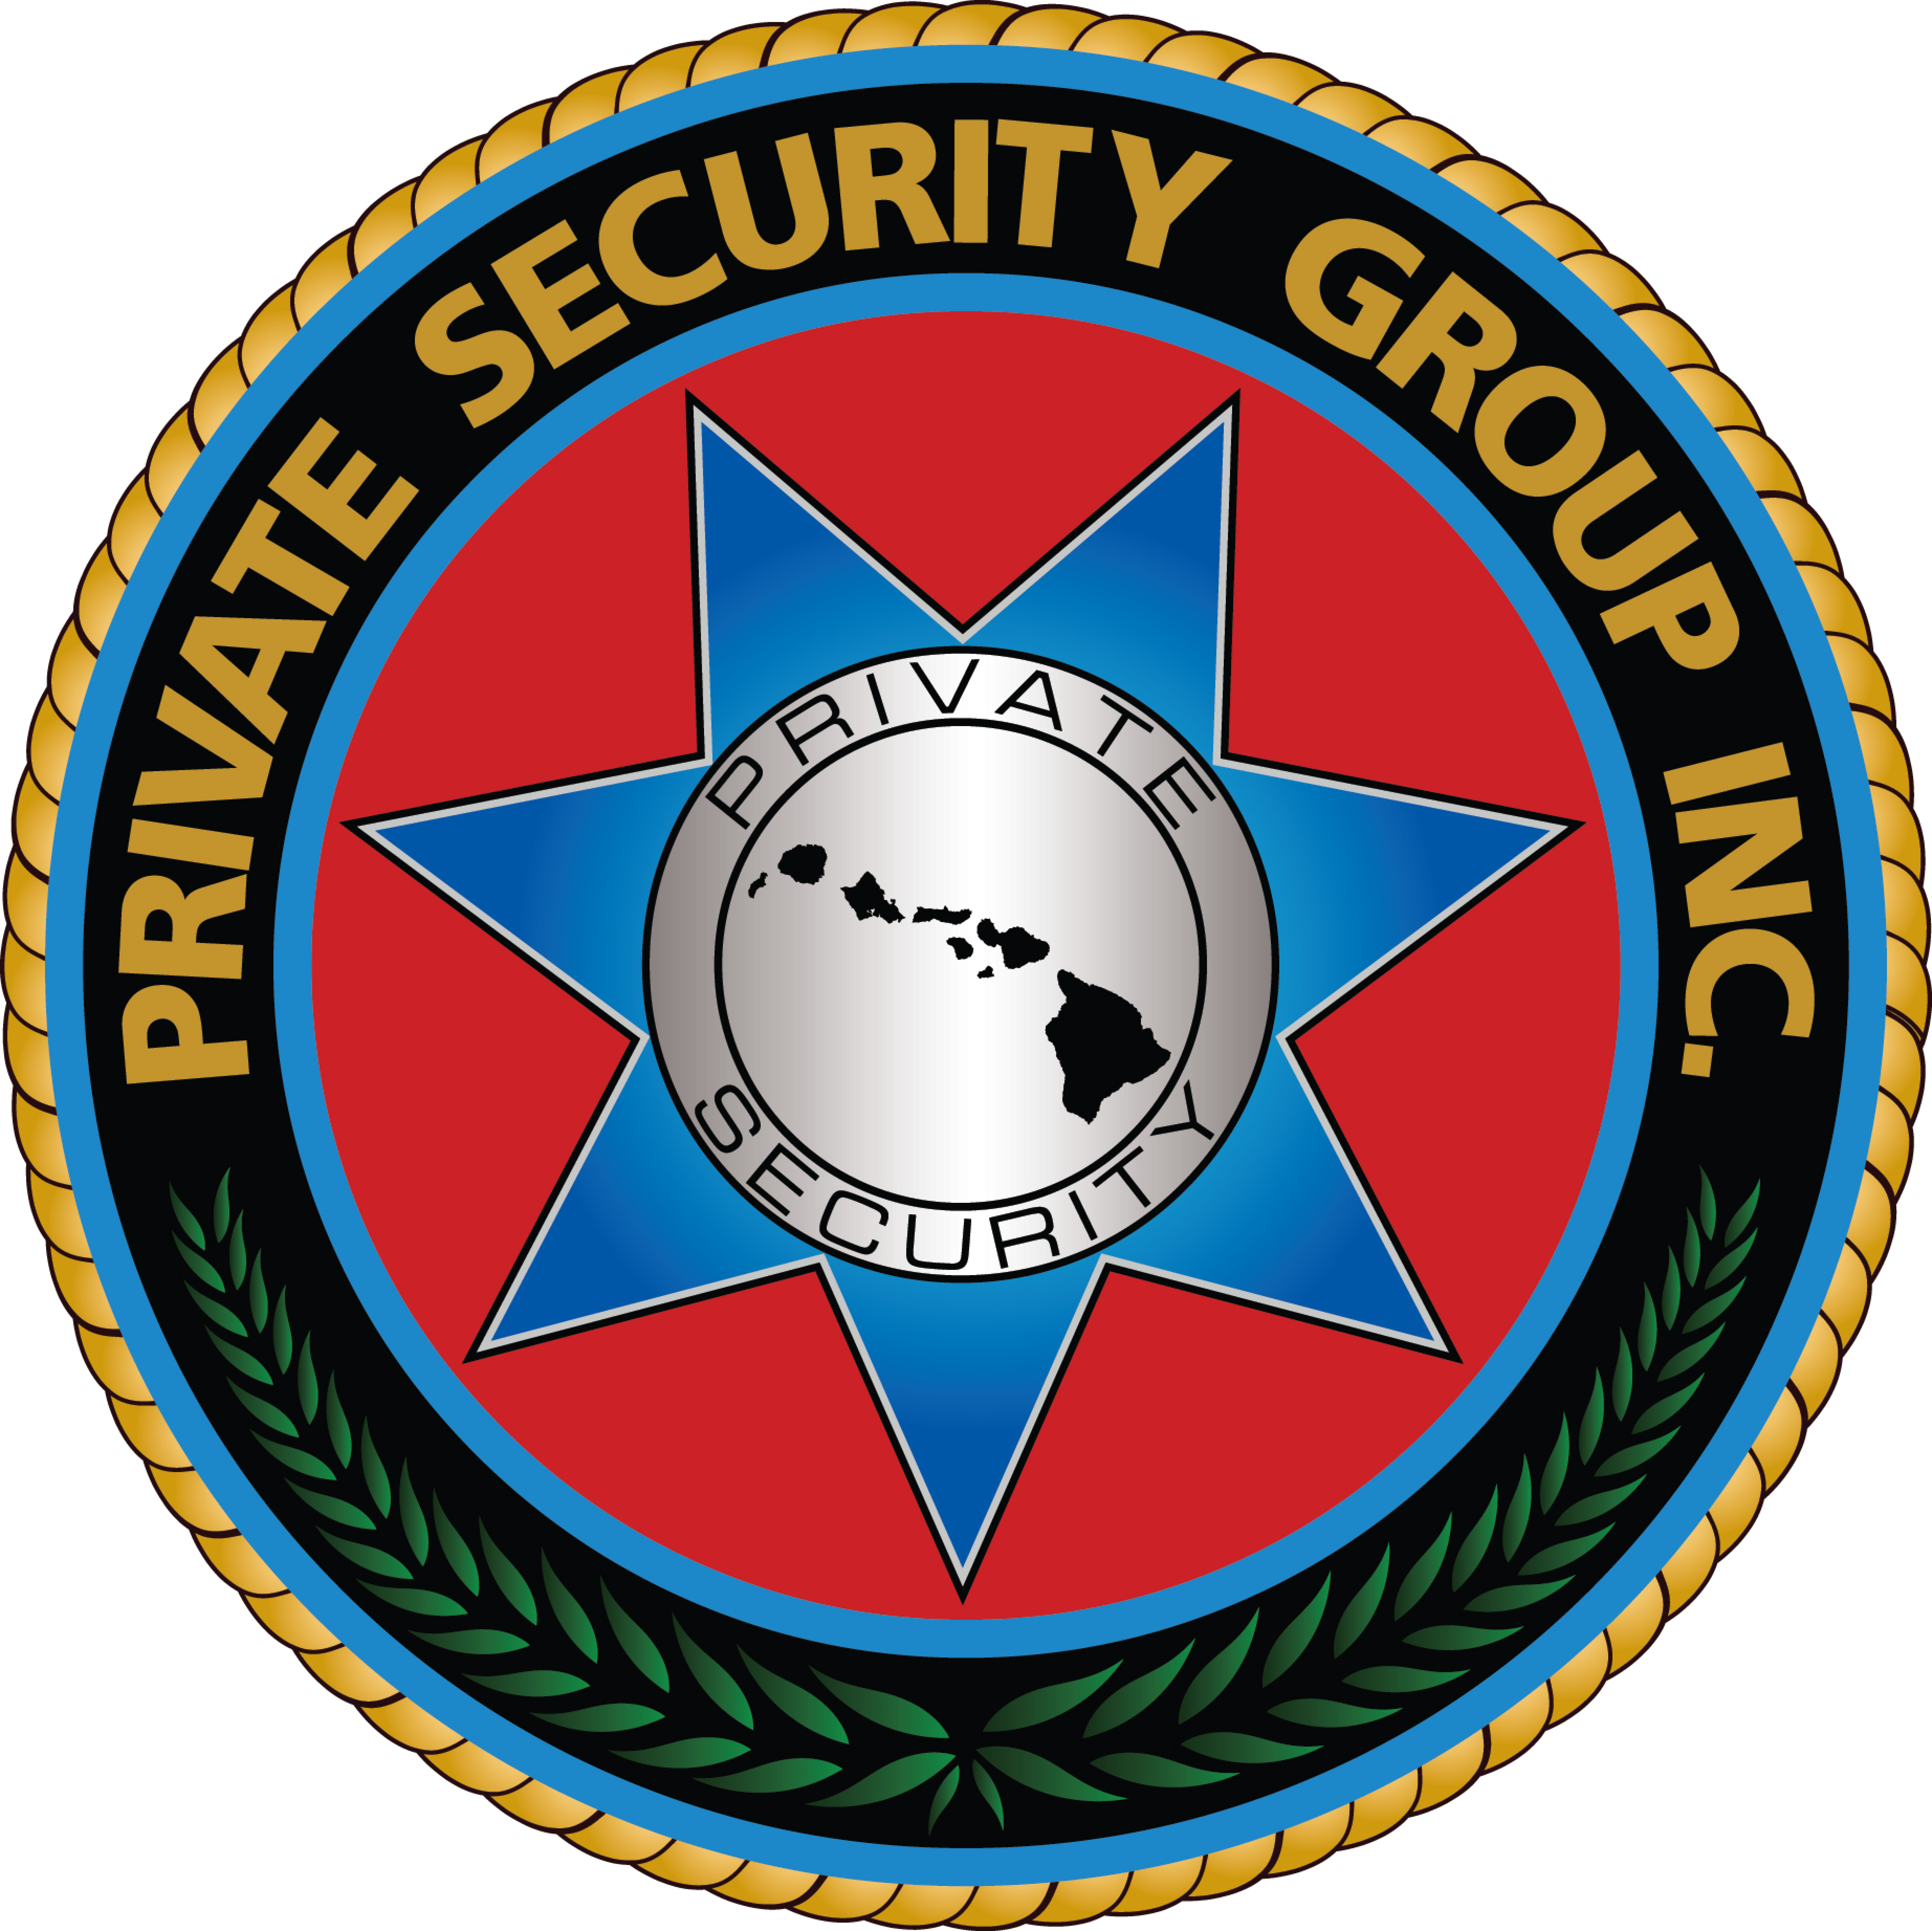 6. Grupo de seguridad privado (Nivel 4)